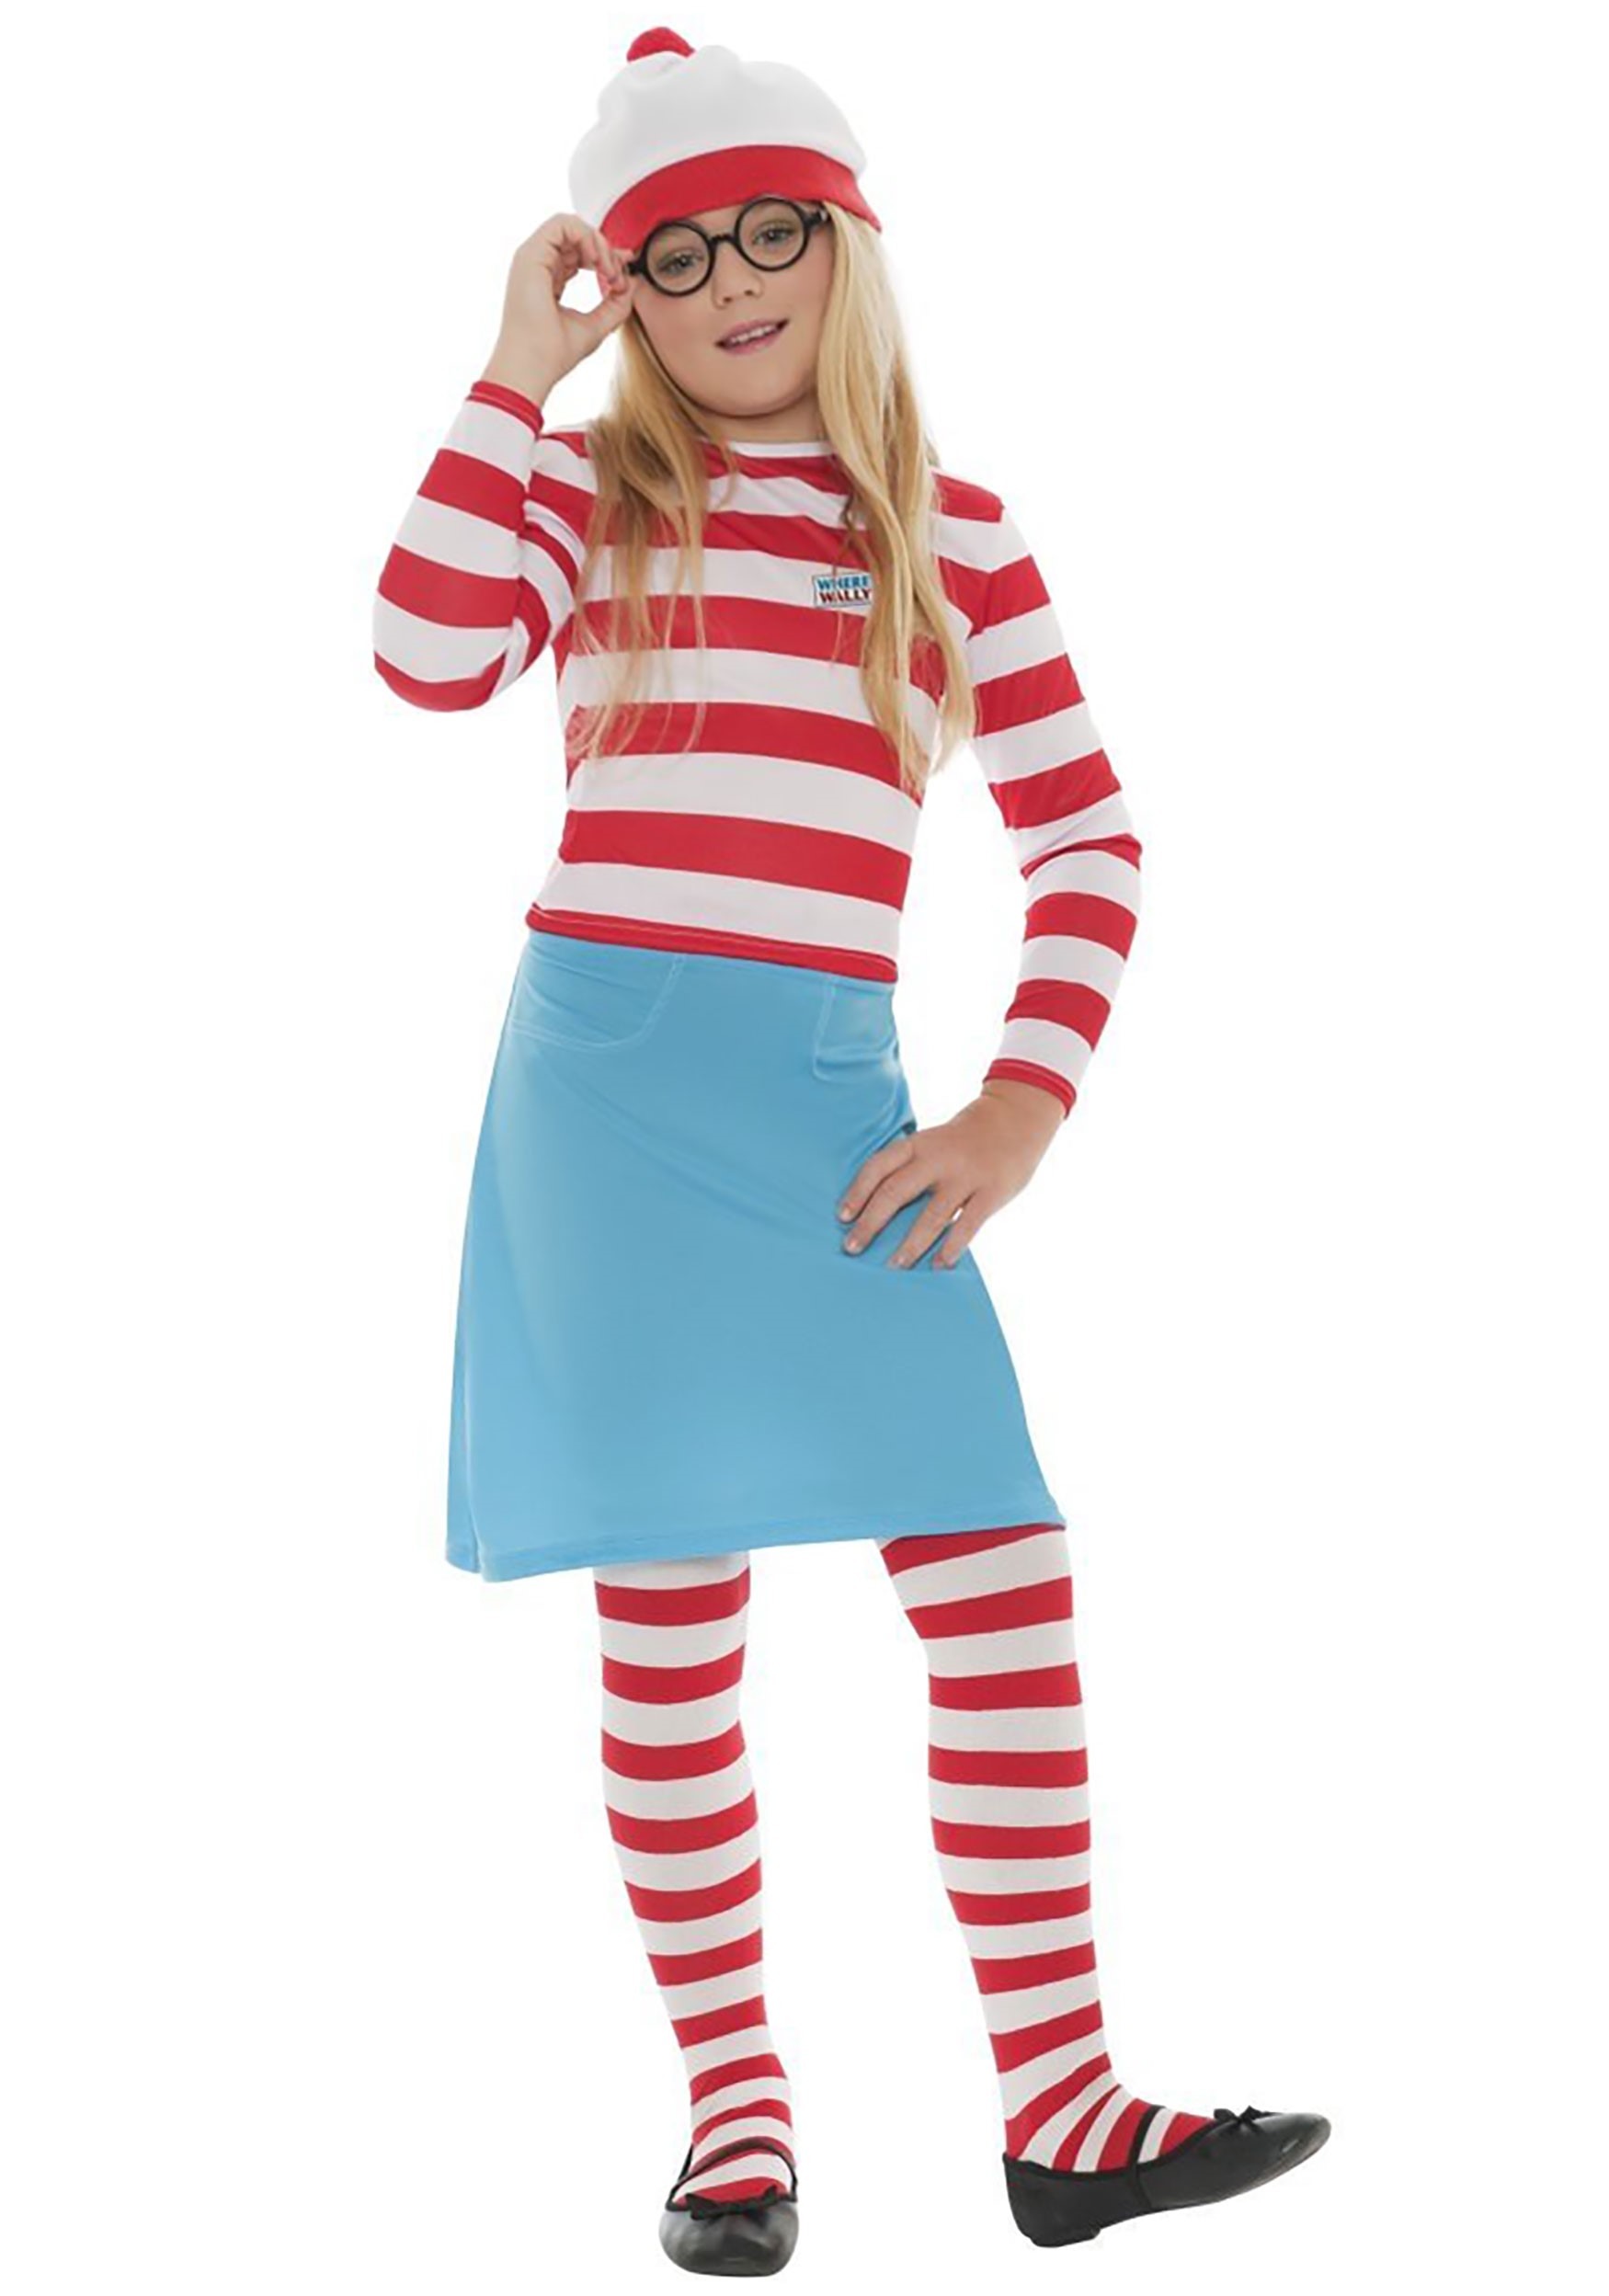 Where’s Wally?: Girls Wenda Costume